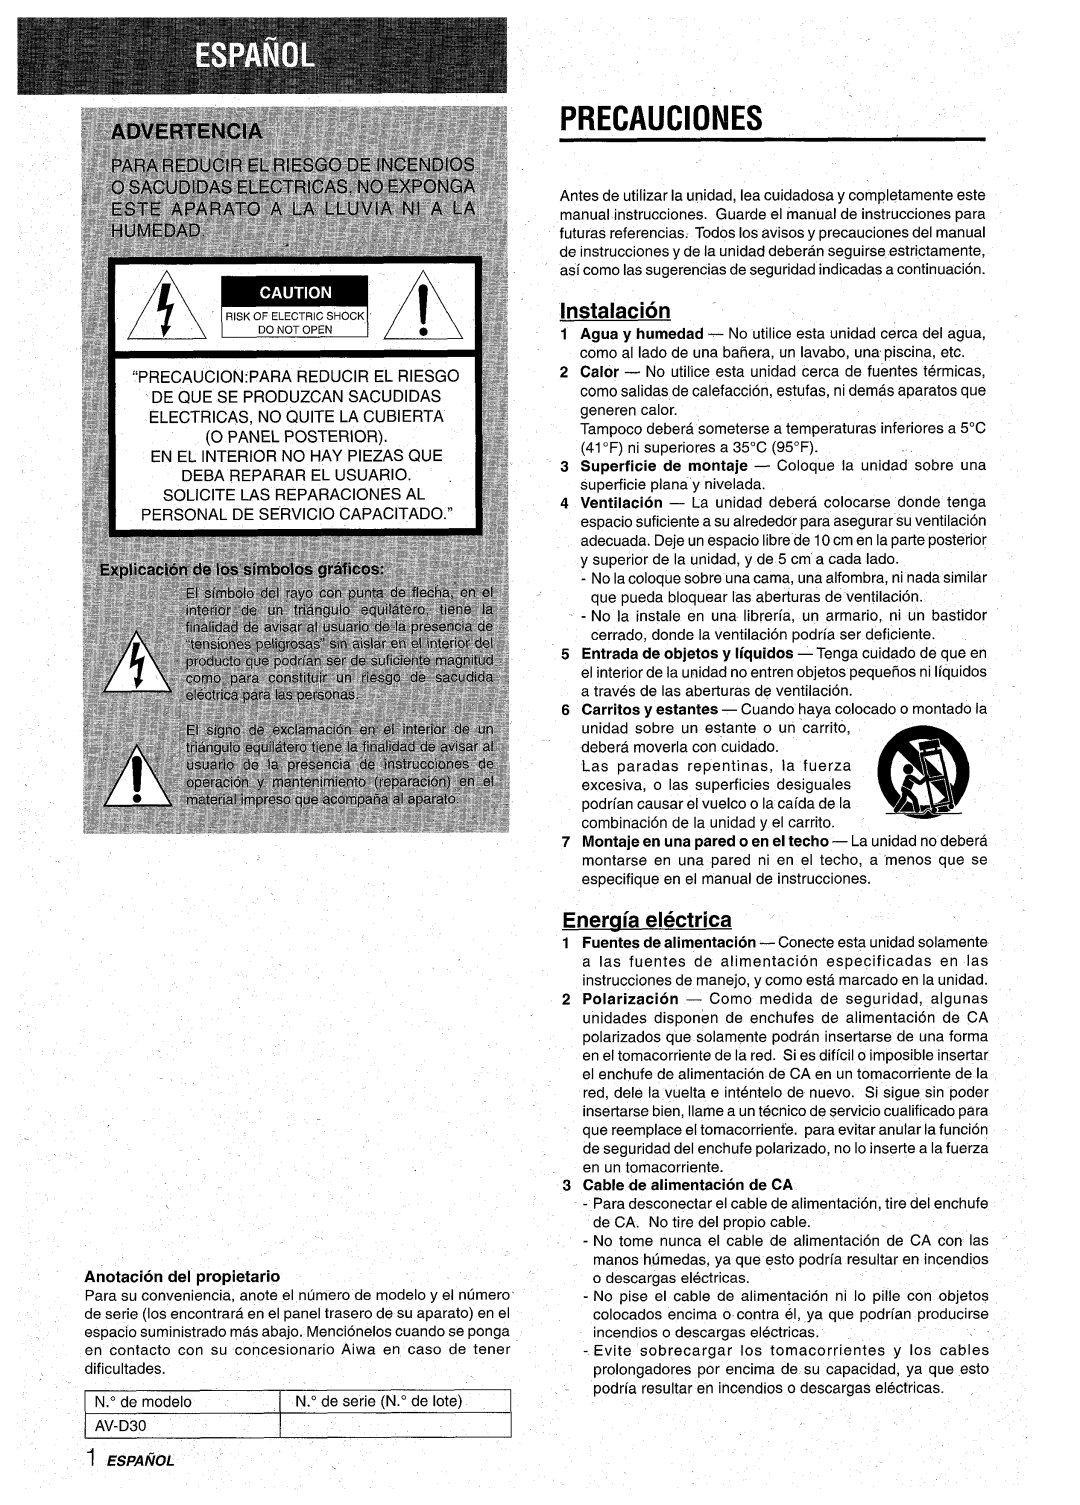 Aiwa AV-D30 manual Precauciones, Instalacion “, Eneruia electrica, Cable de alimentacion de CA 